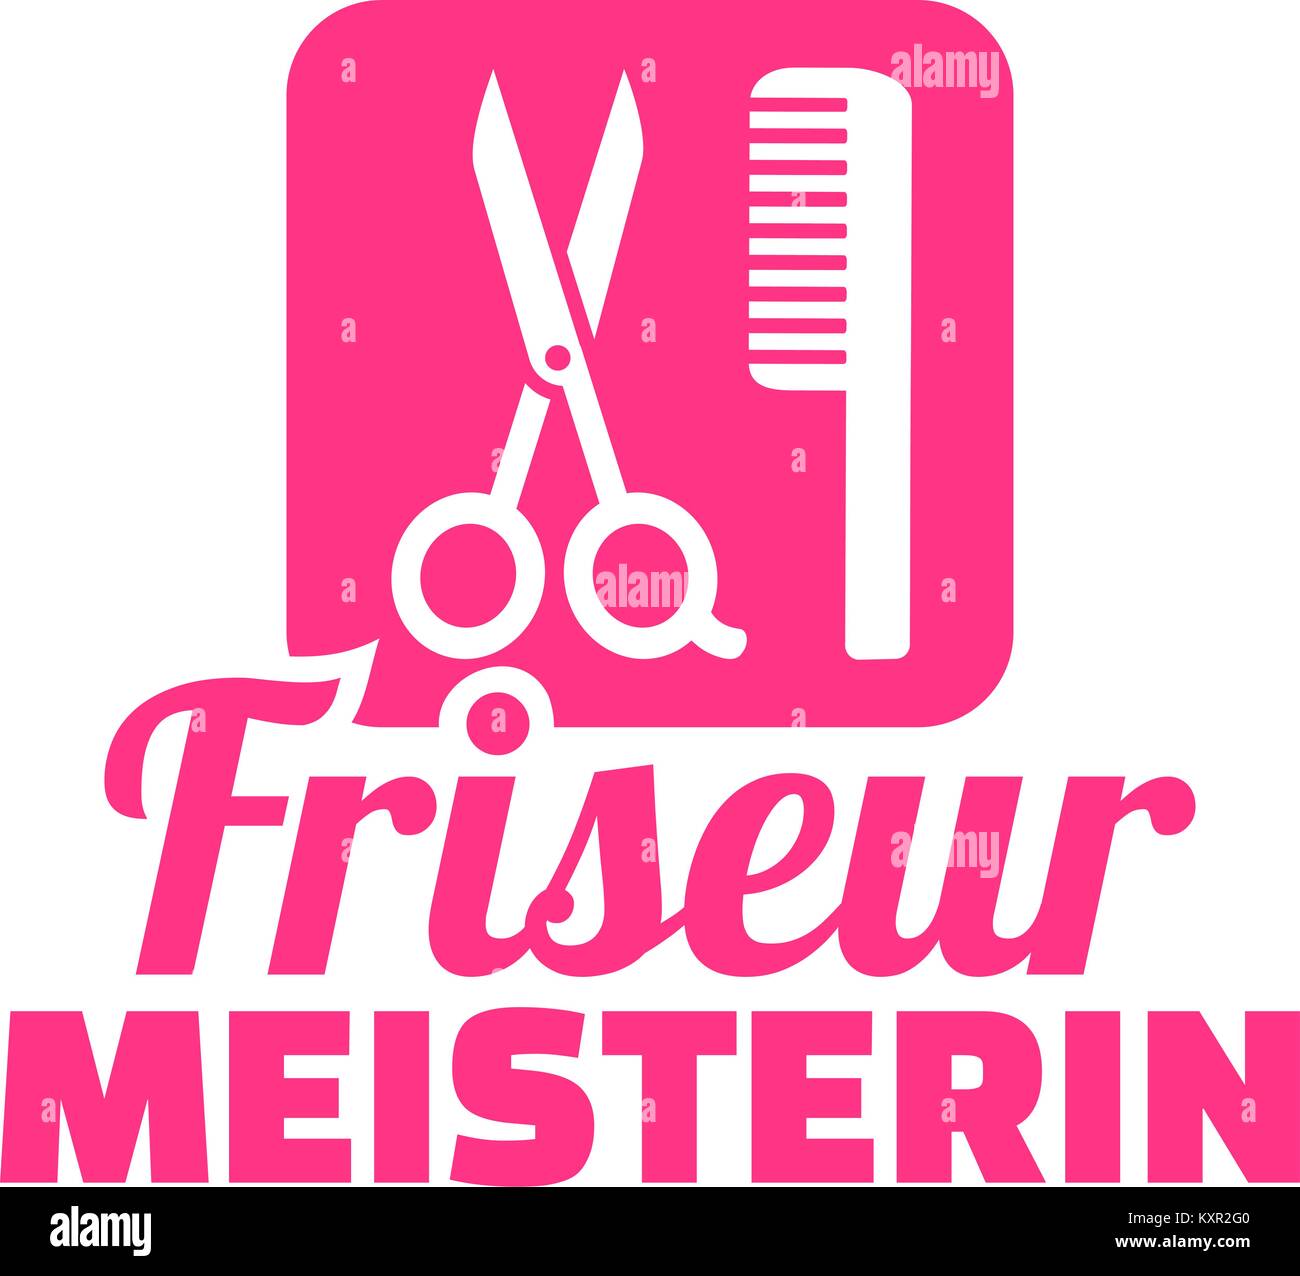 Friseur master Symbol mit weiblichen deutschen Wort Stock Vektor